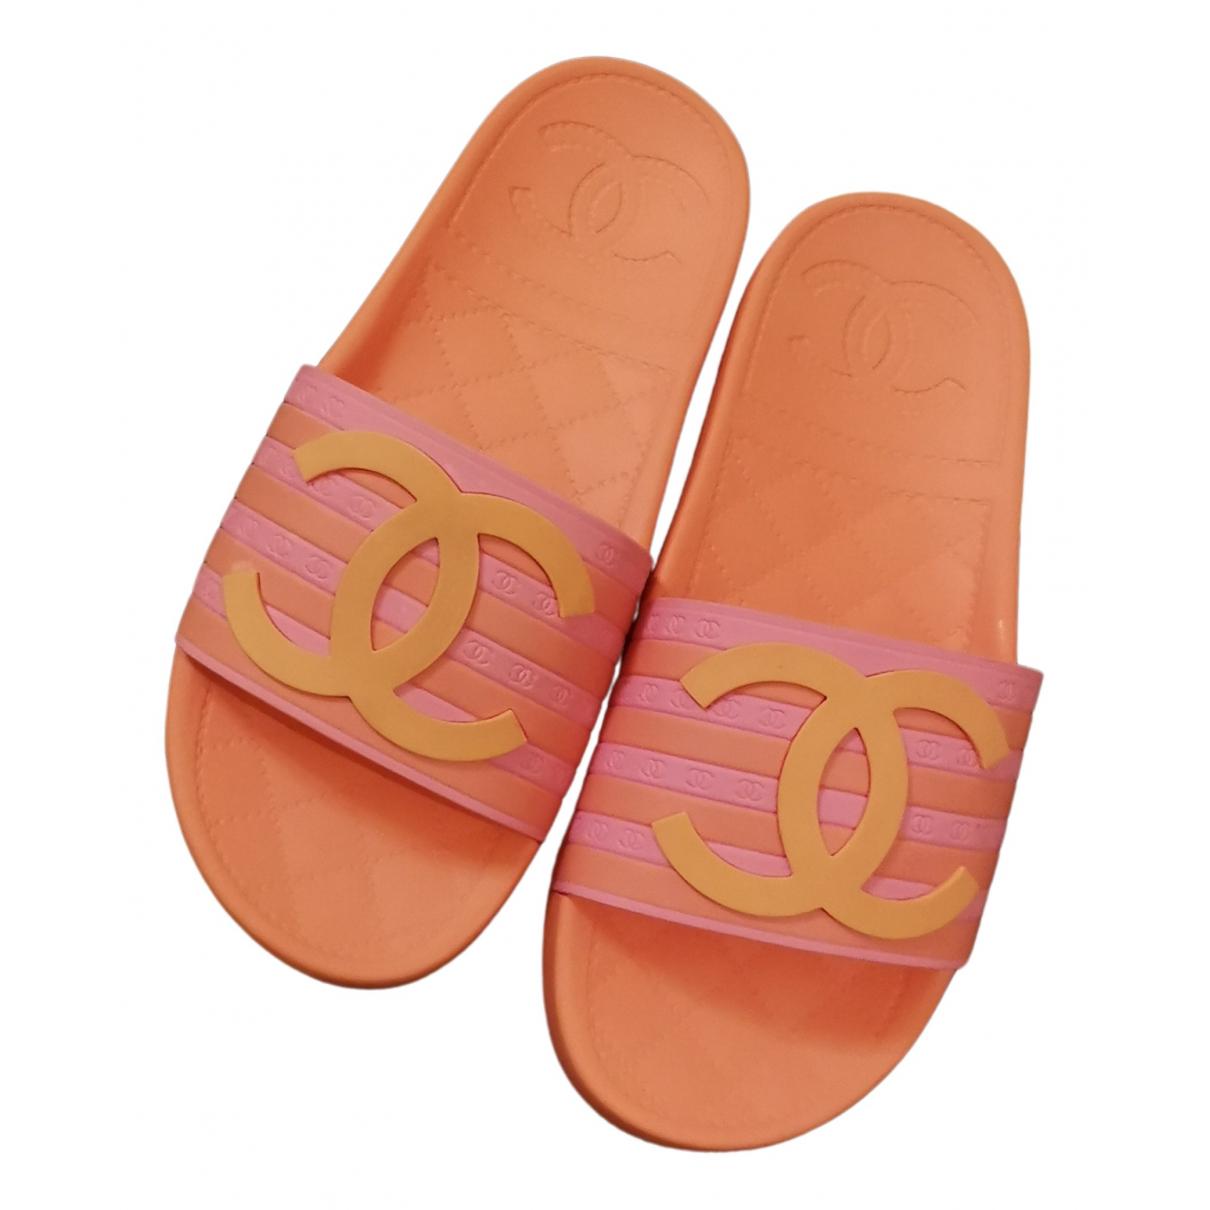 Chanel Camellia Accent Rubber Slides - Orange Sandals, Shoes - CHA915267